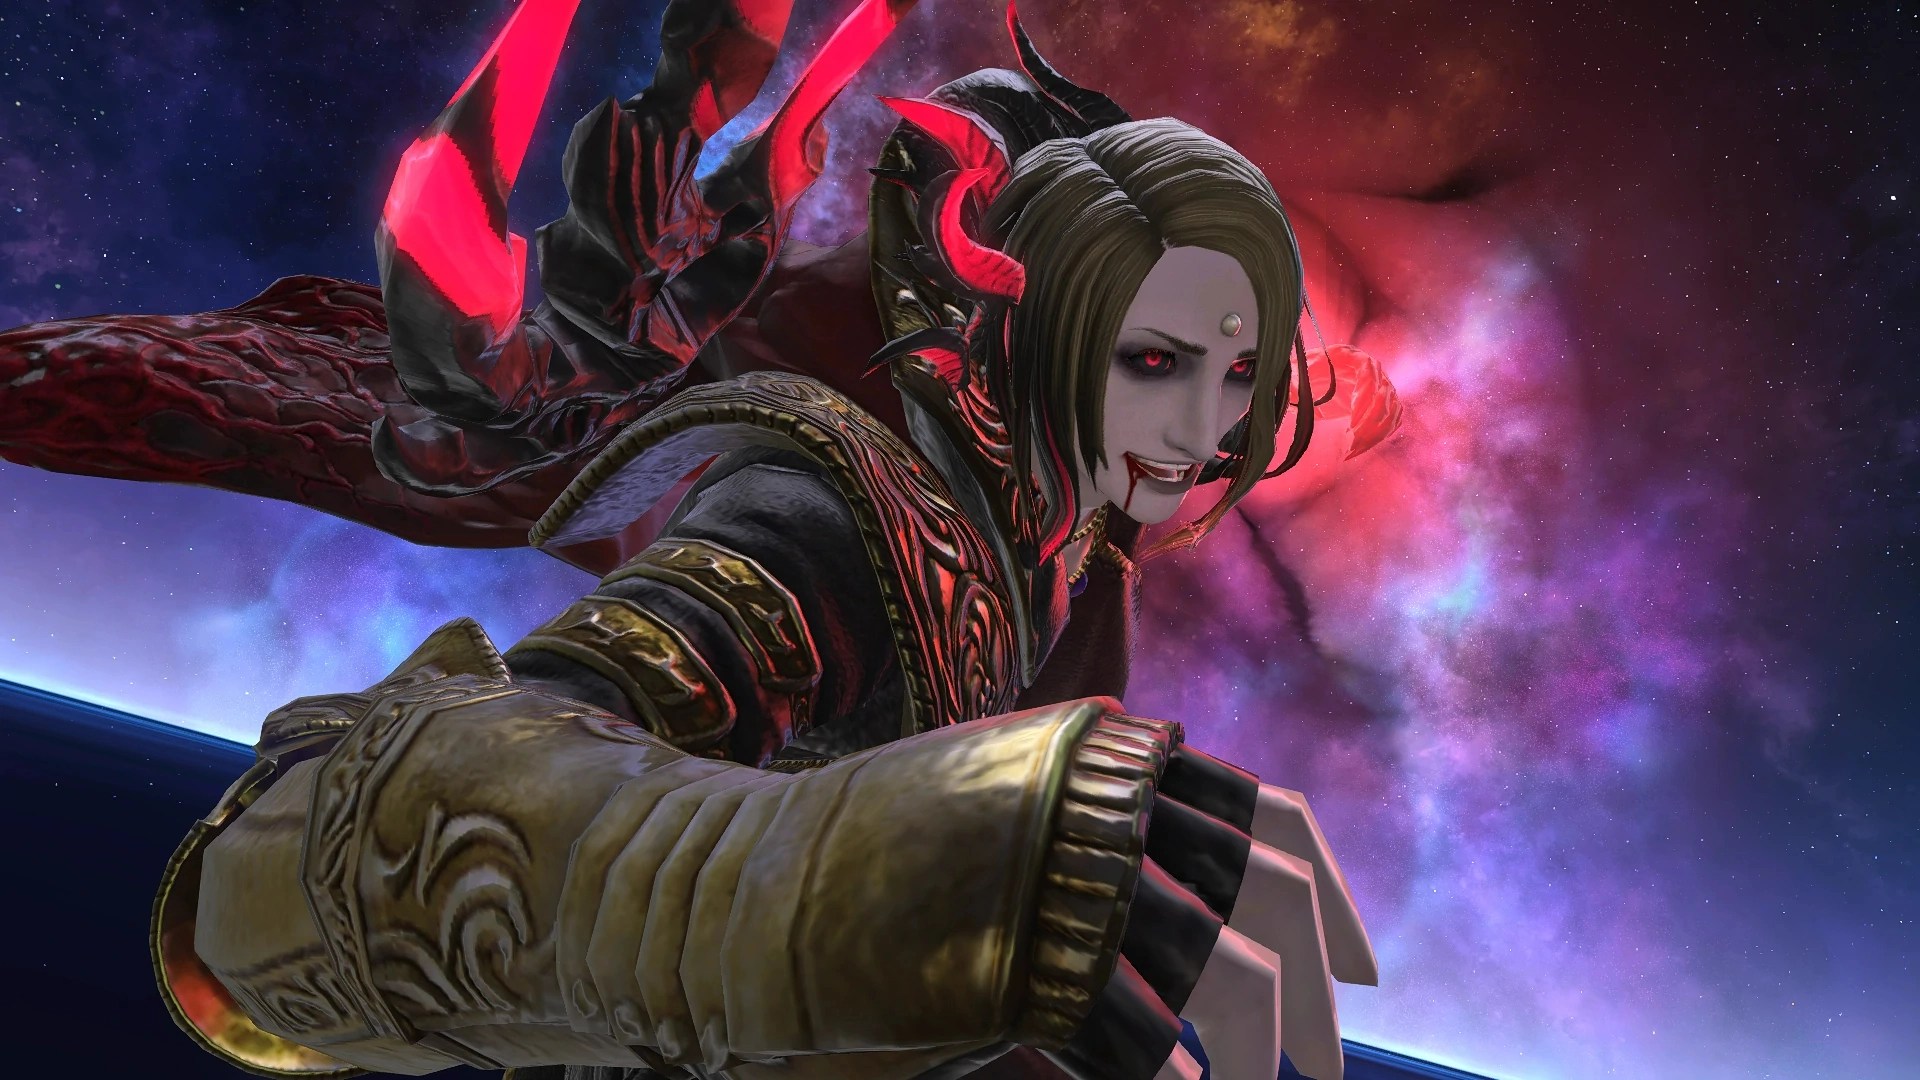 El mod Gshade de Final Fantasy XIV contiene malware, admite el desarrollador